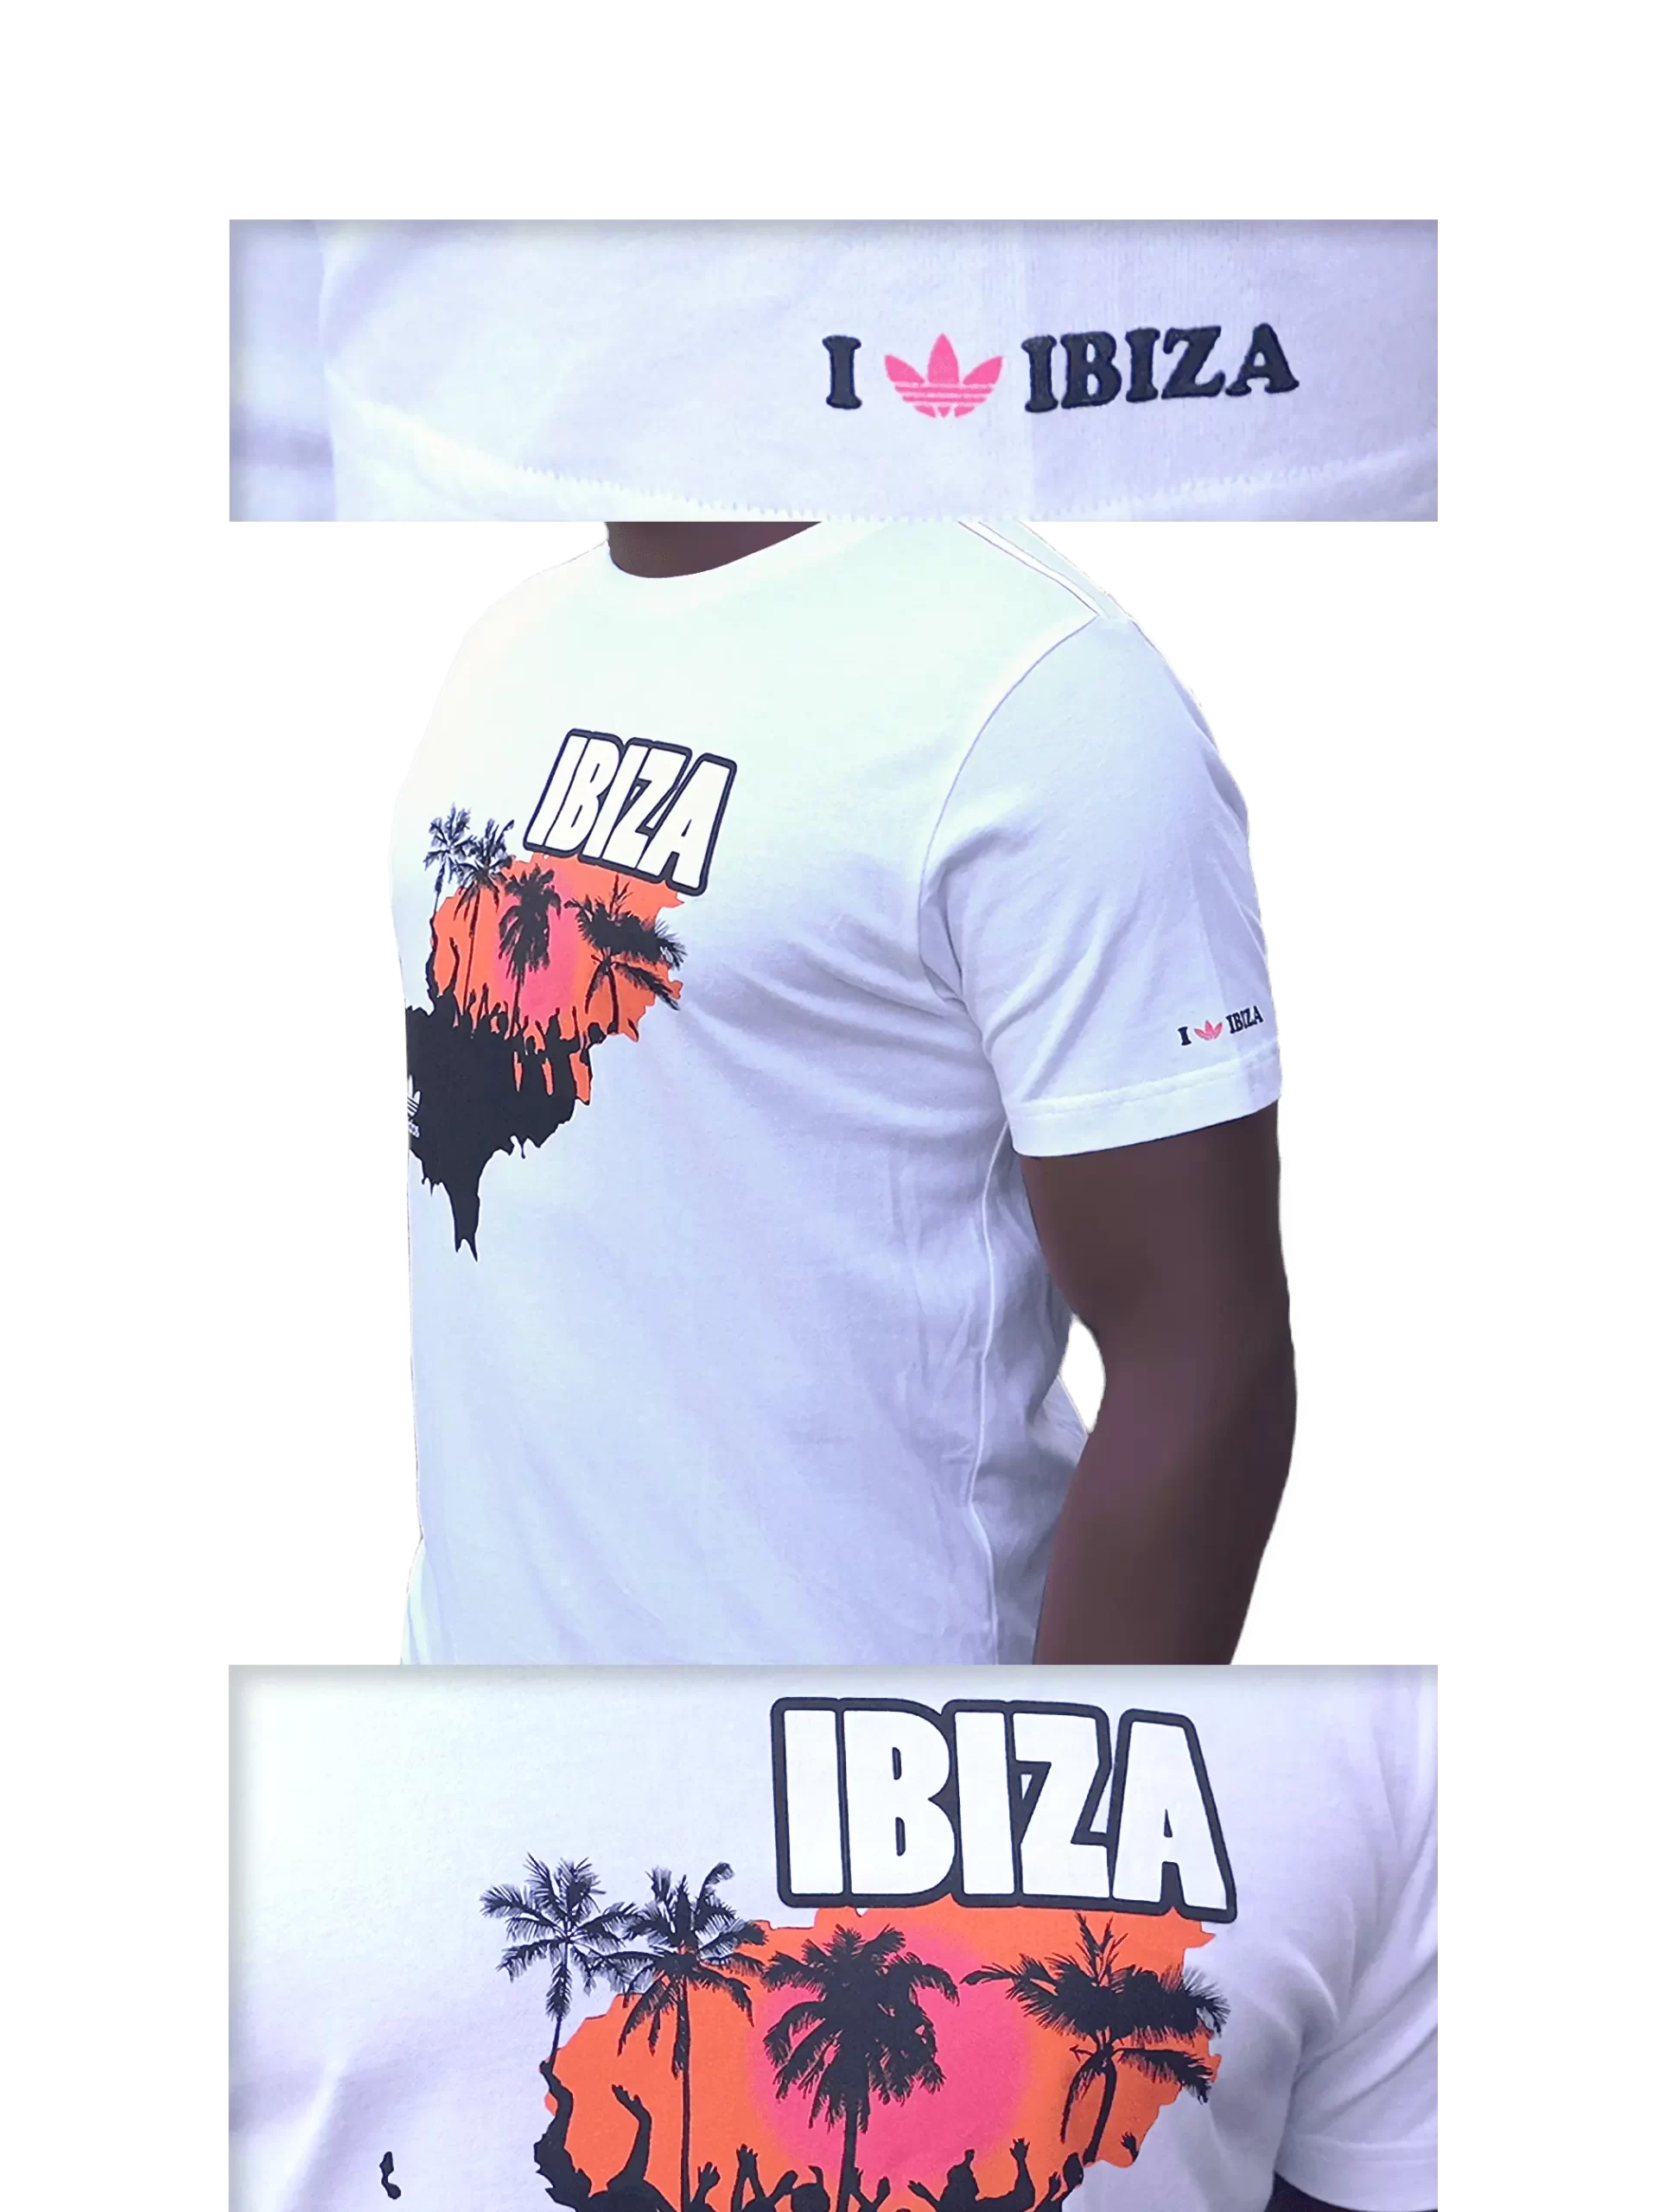 Men's 2007 Ibiza T-Shirt by Adidas Originals: Ignite (EnLawded.com file #lmchk66620ip2y123828kg9st)